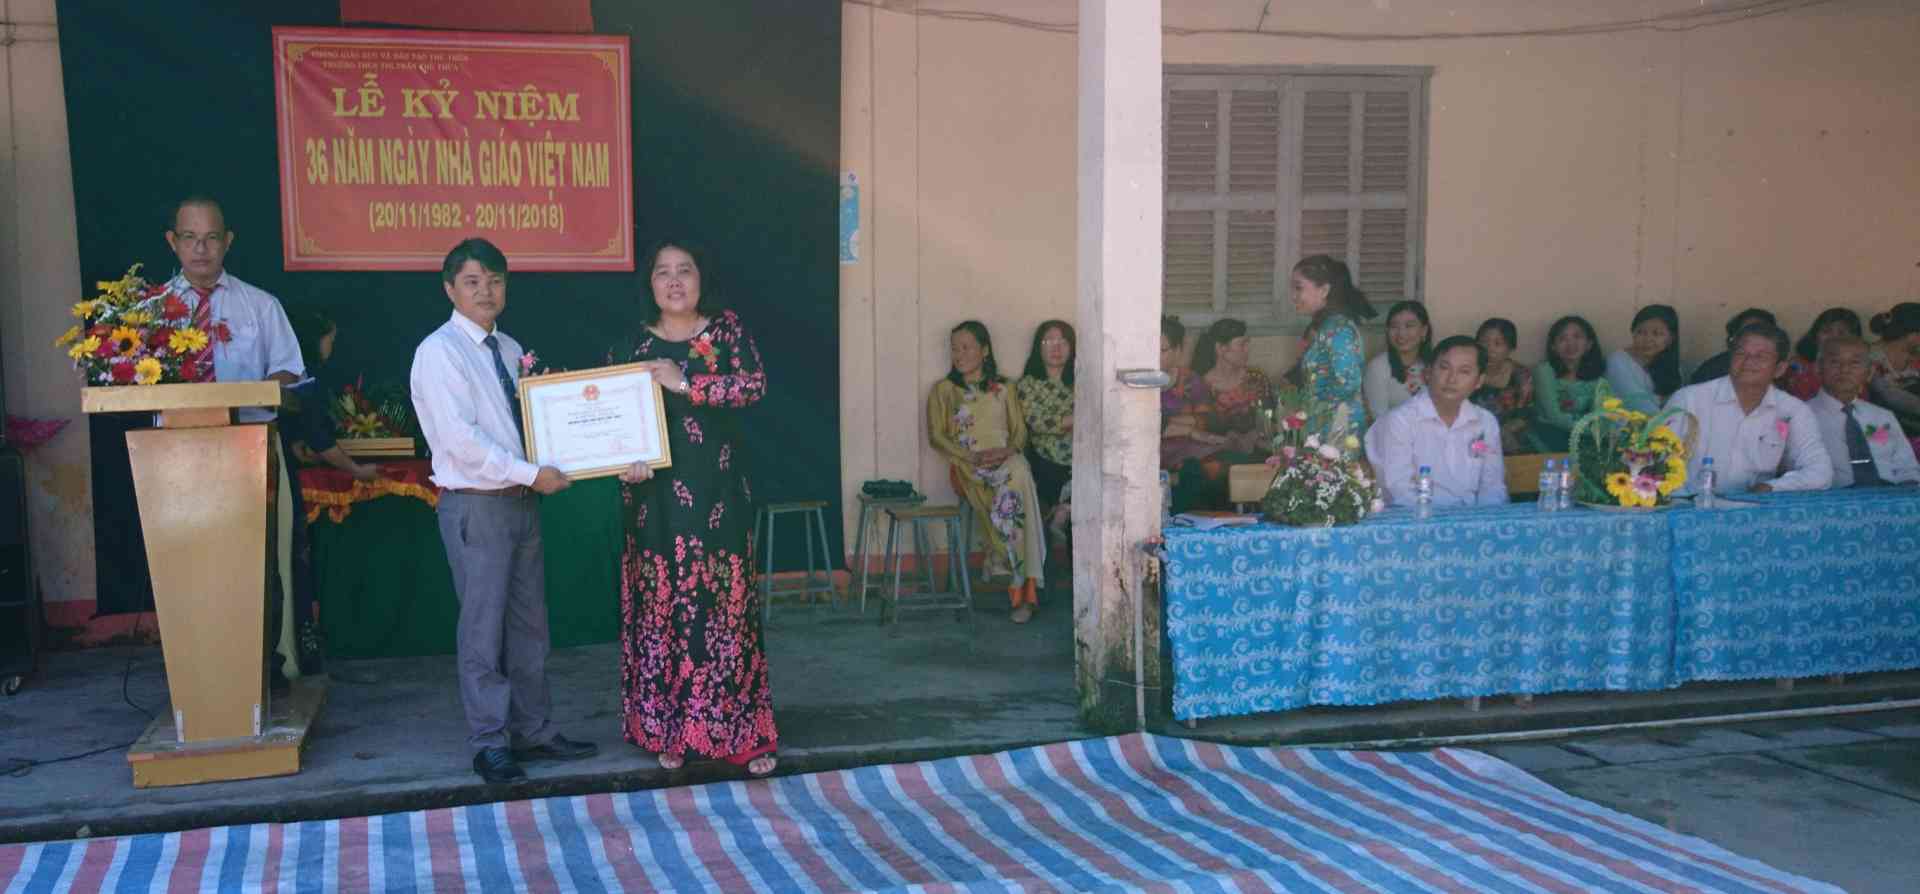 Trưởng Phòng GD&ĐT huyện ( bìa trái) trao bằng khen của UBND Tỉnh cho tập thể trường THCS Thị trấn Thủ Thừa